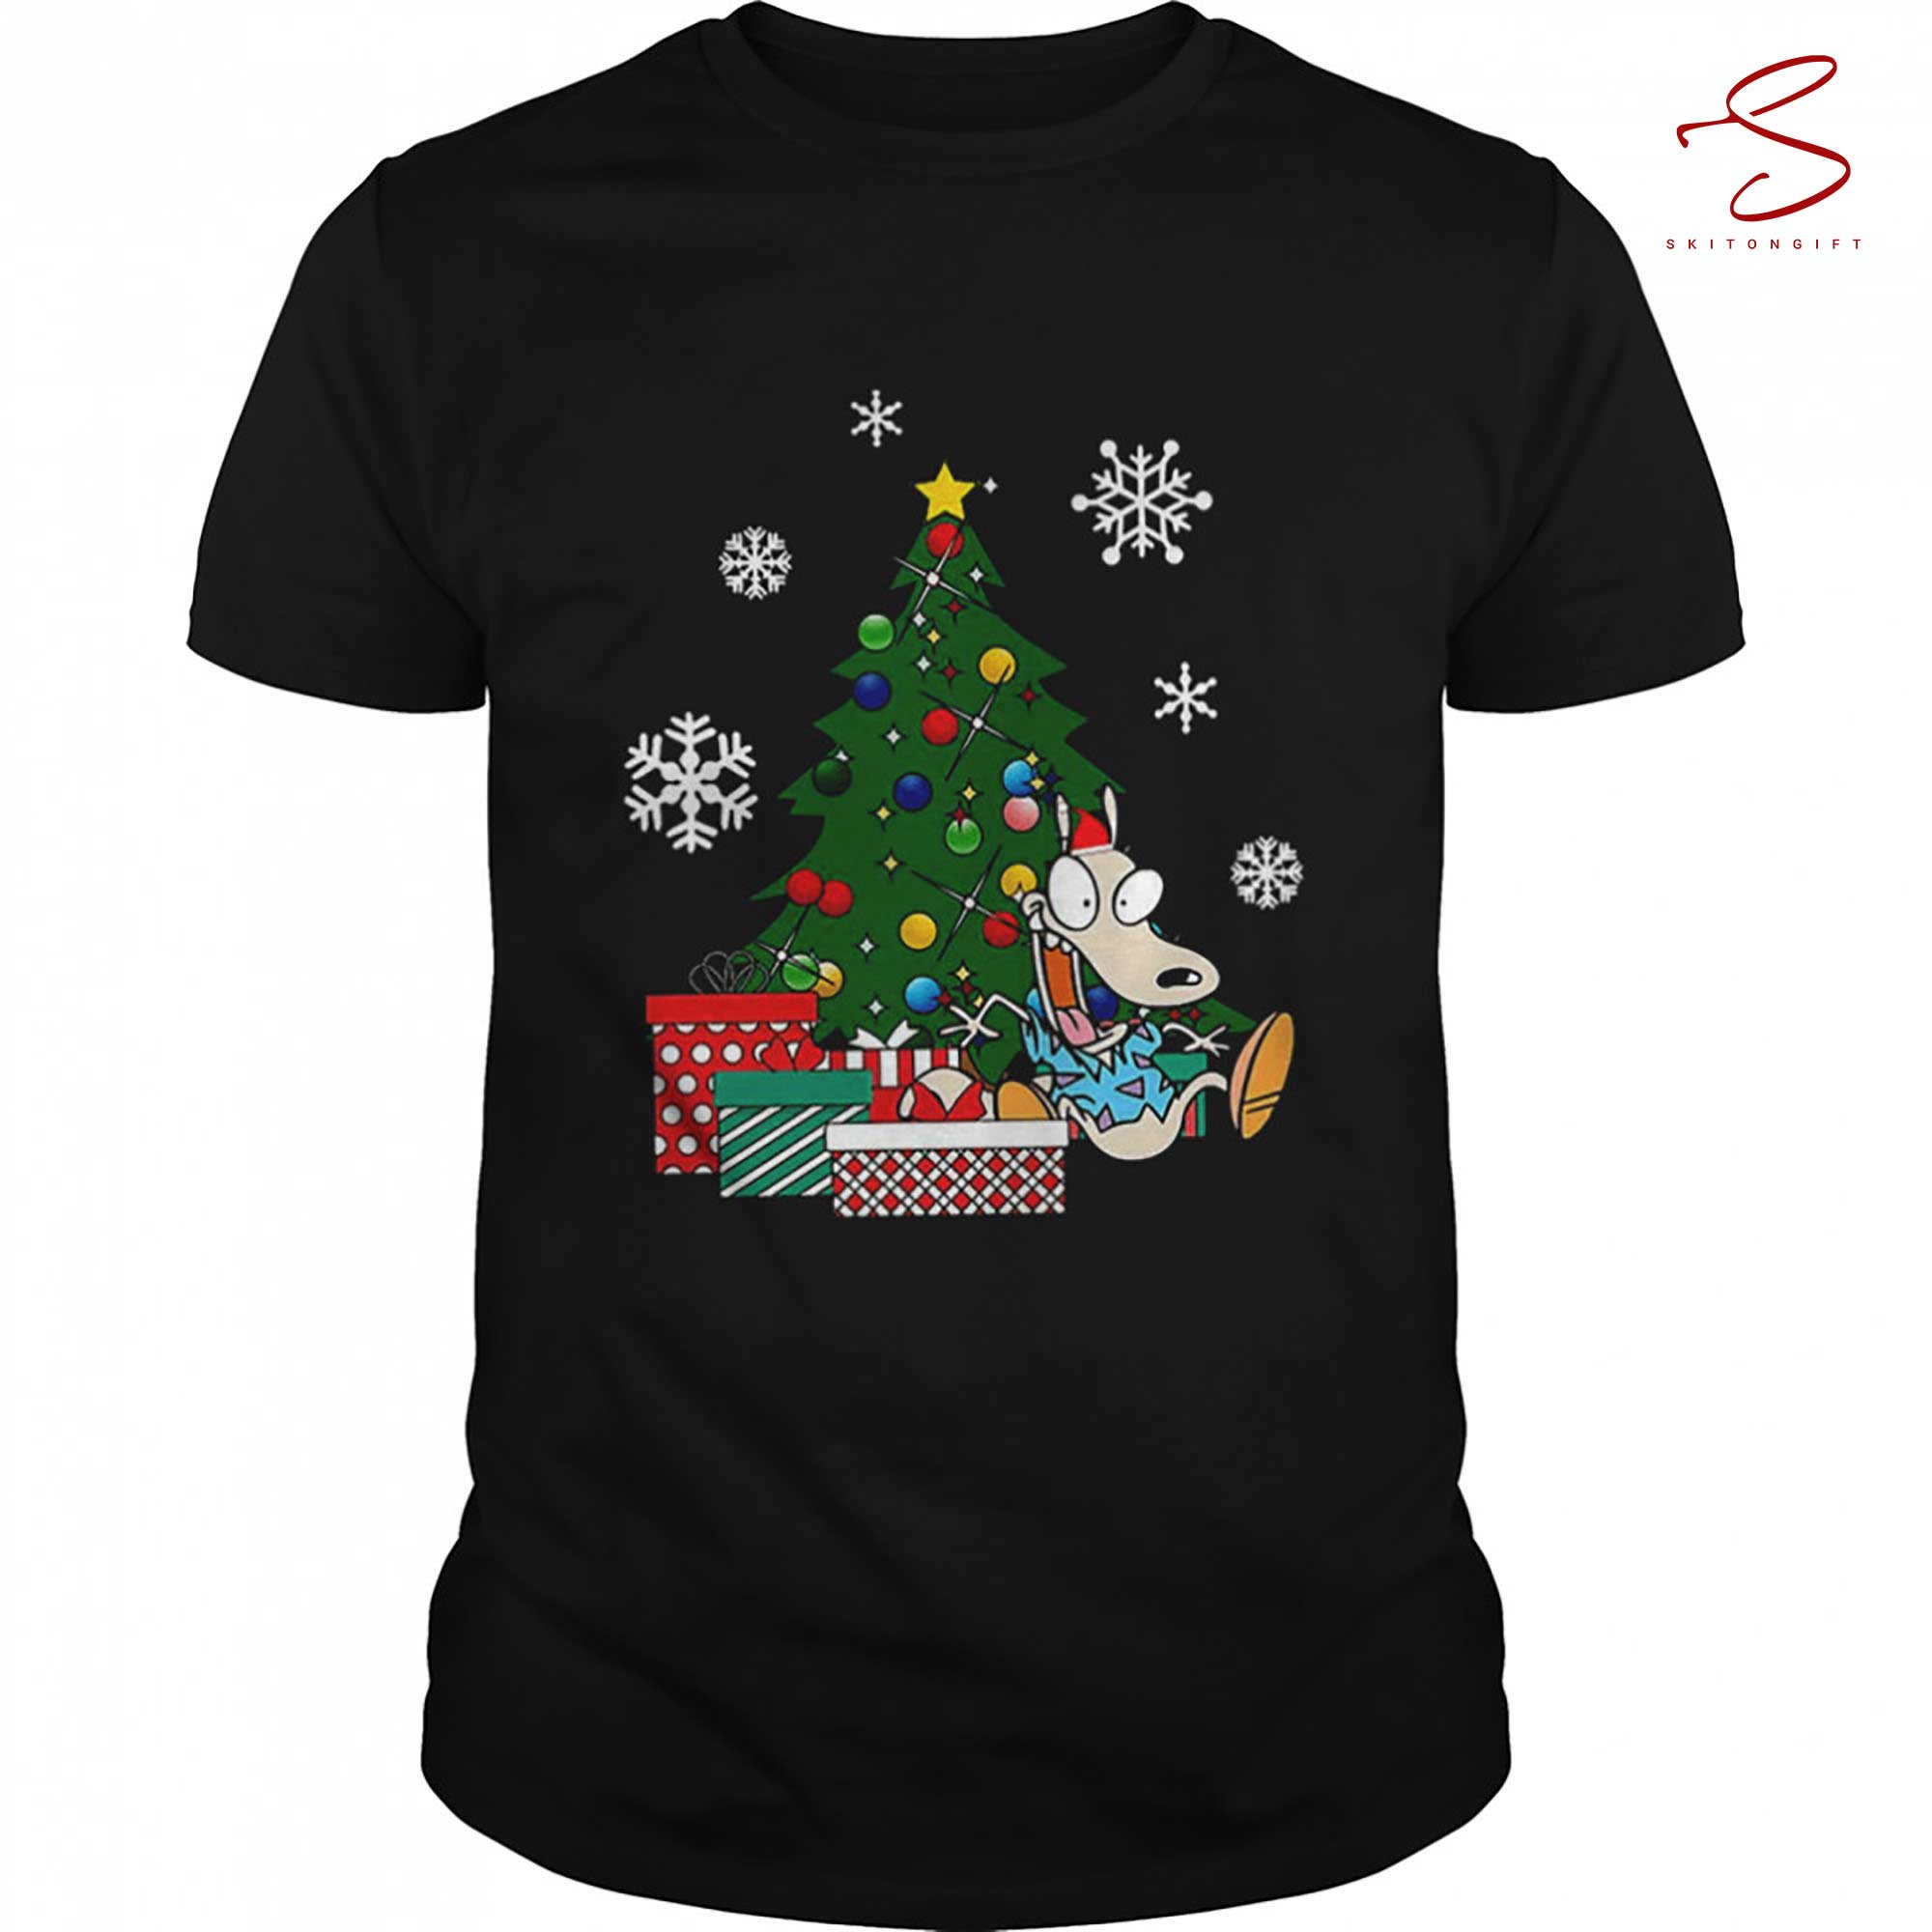 Skitongift Around The Christmas Tree Rockos Modern Life T Shirt